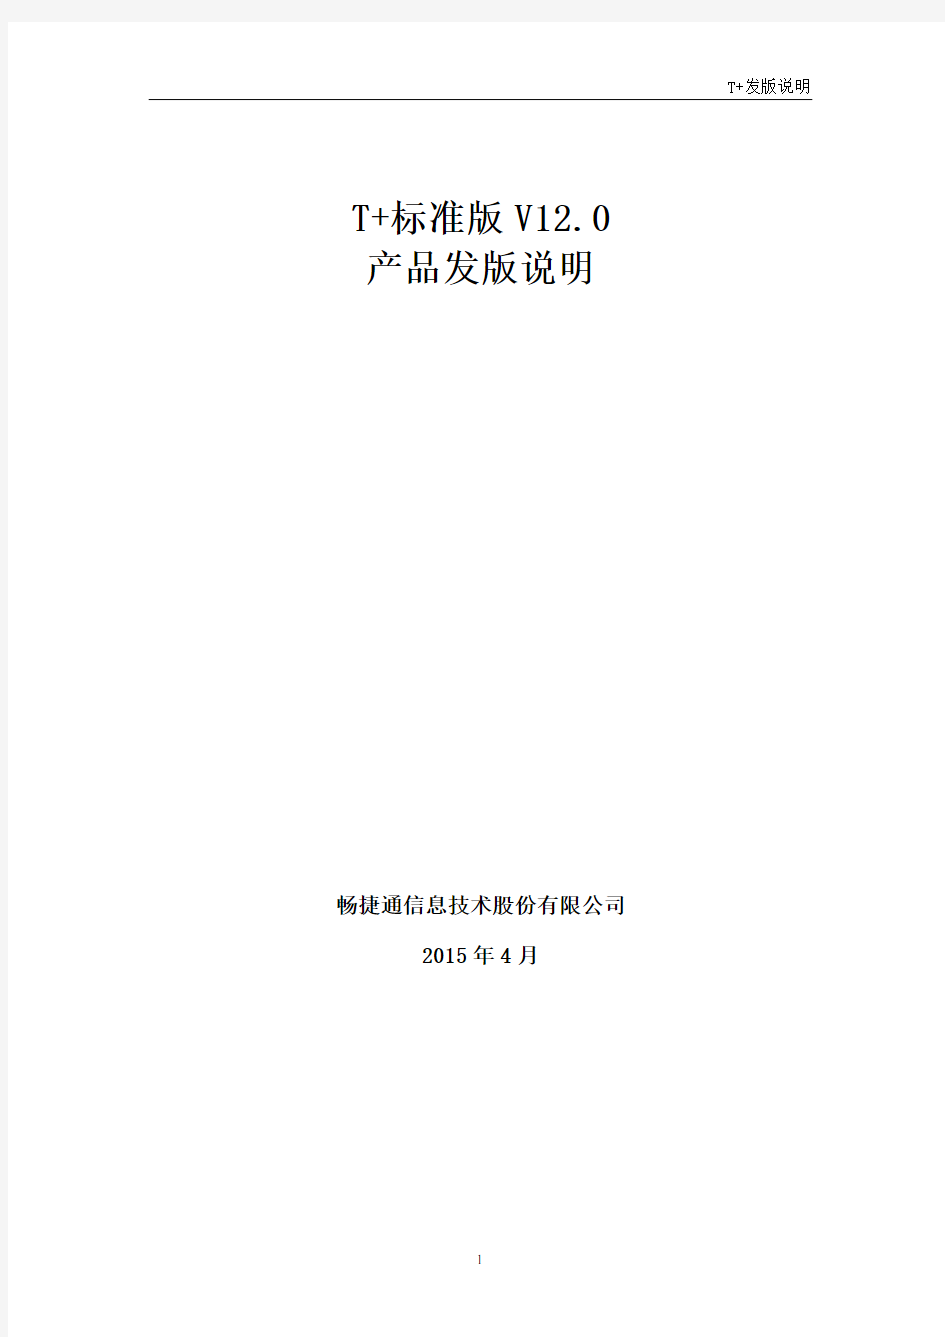 畅捷通T+标准版发版说明(V12.0)